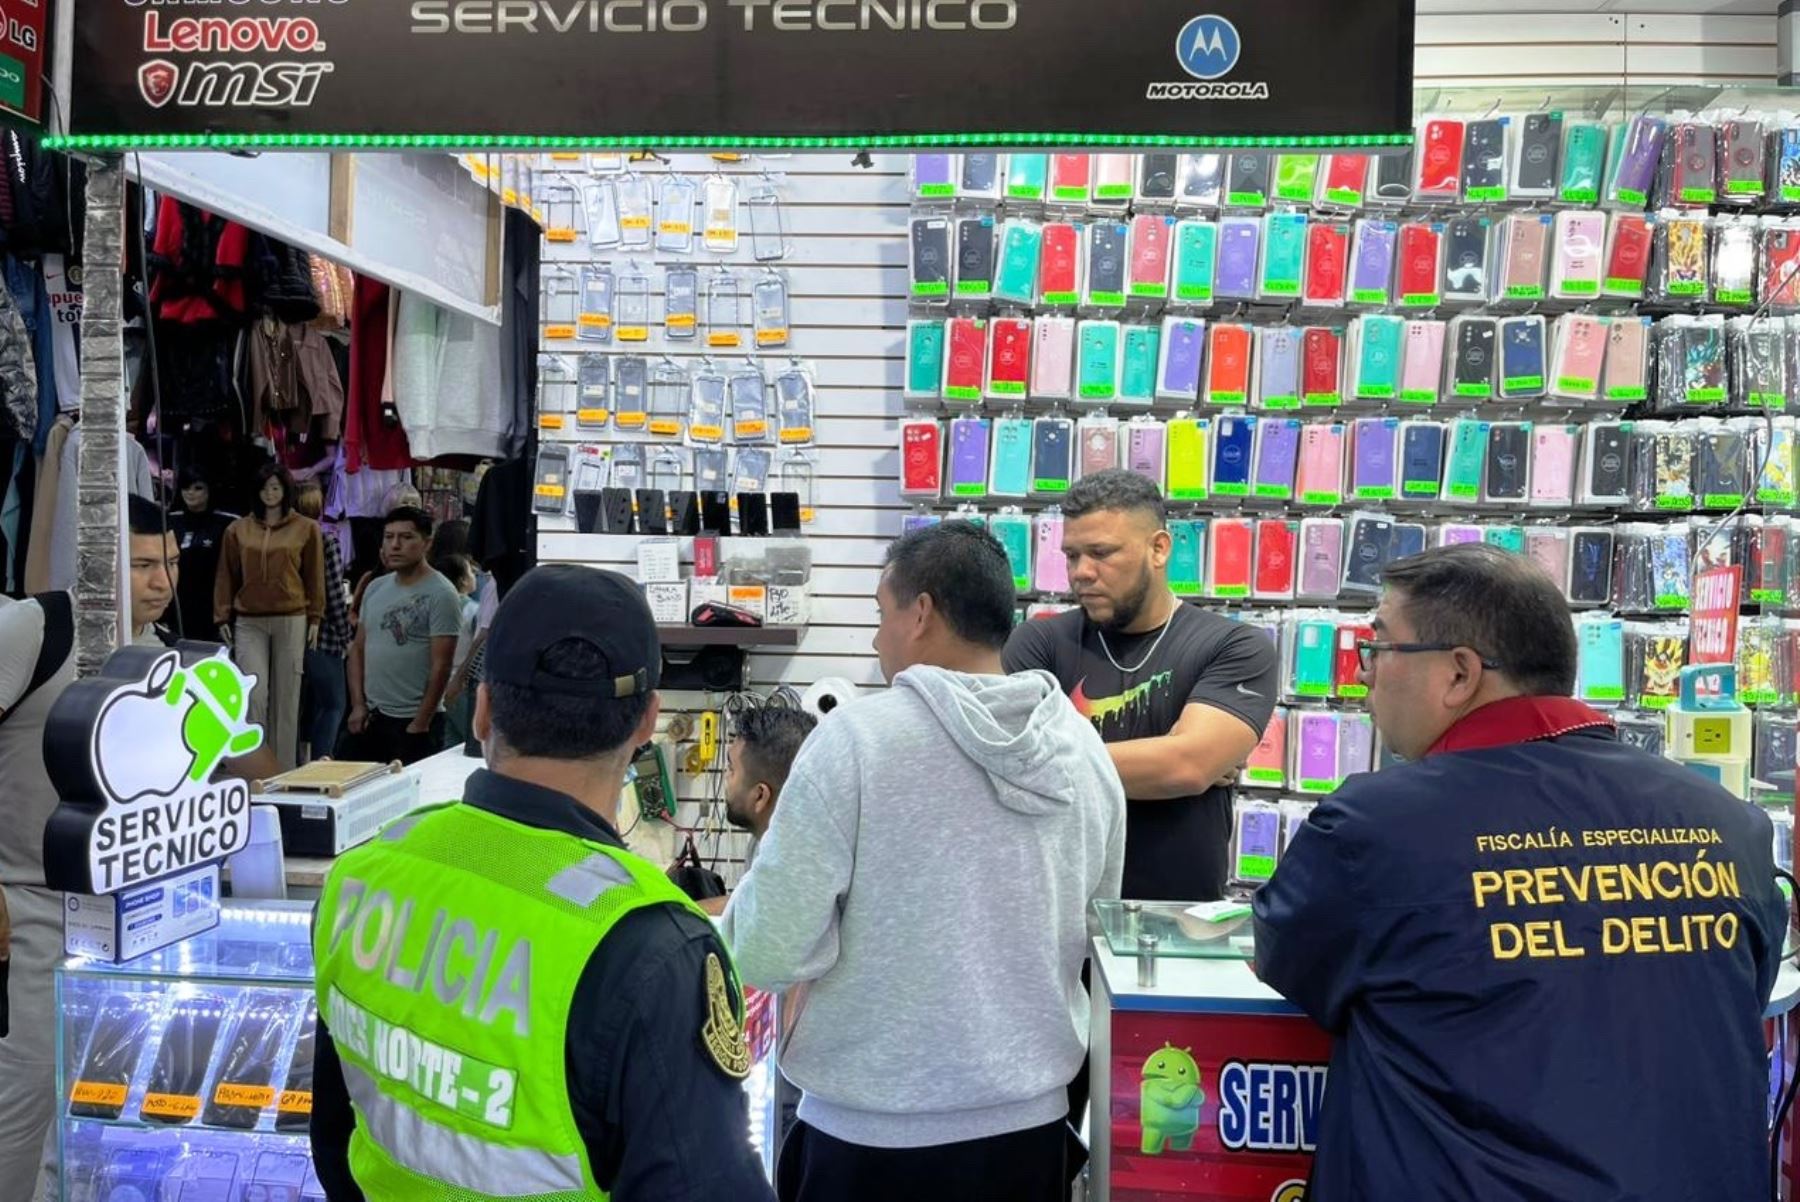 Los stands, tiendas o locales son instrumentalizados para la venta de productos robados, como celulares. ANDINA/ Policía Nacional.